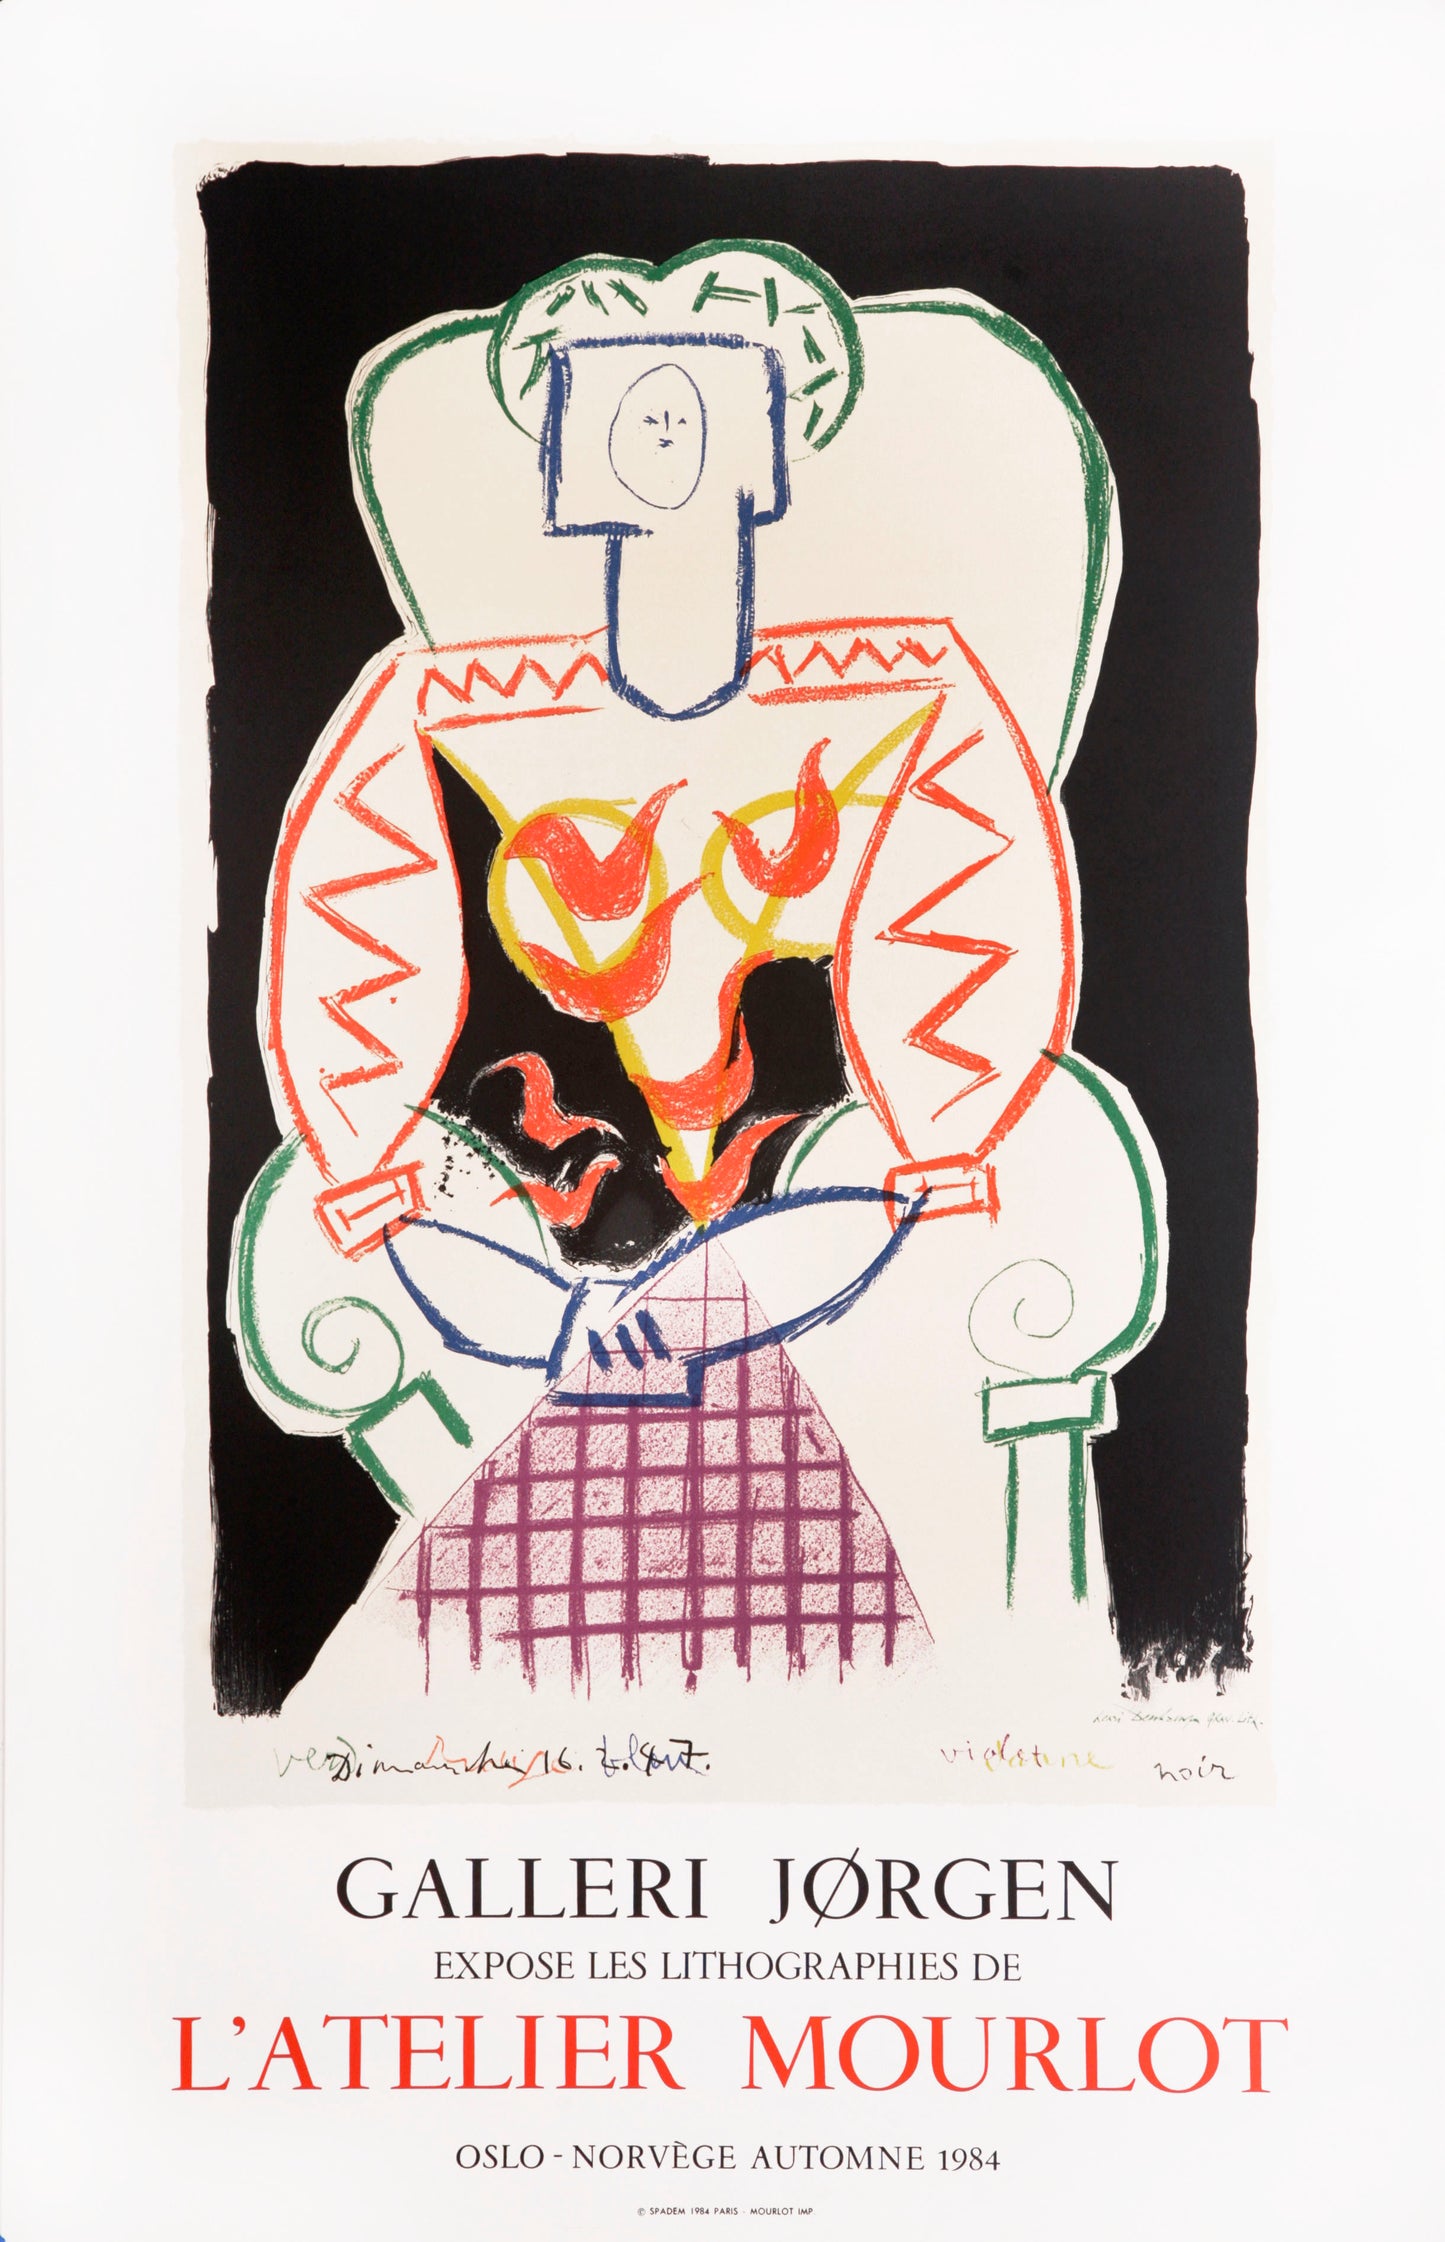 Galerie Jorgen, l'Atelier Mourlot by Pablo Picasso, 1984 - Mourlot Editions - Fine_Art - Poster - Lithograph - Wall Art - Vintage - Prints - Original